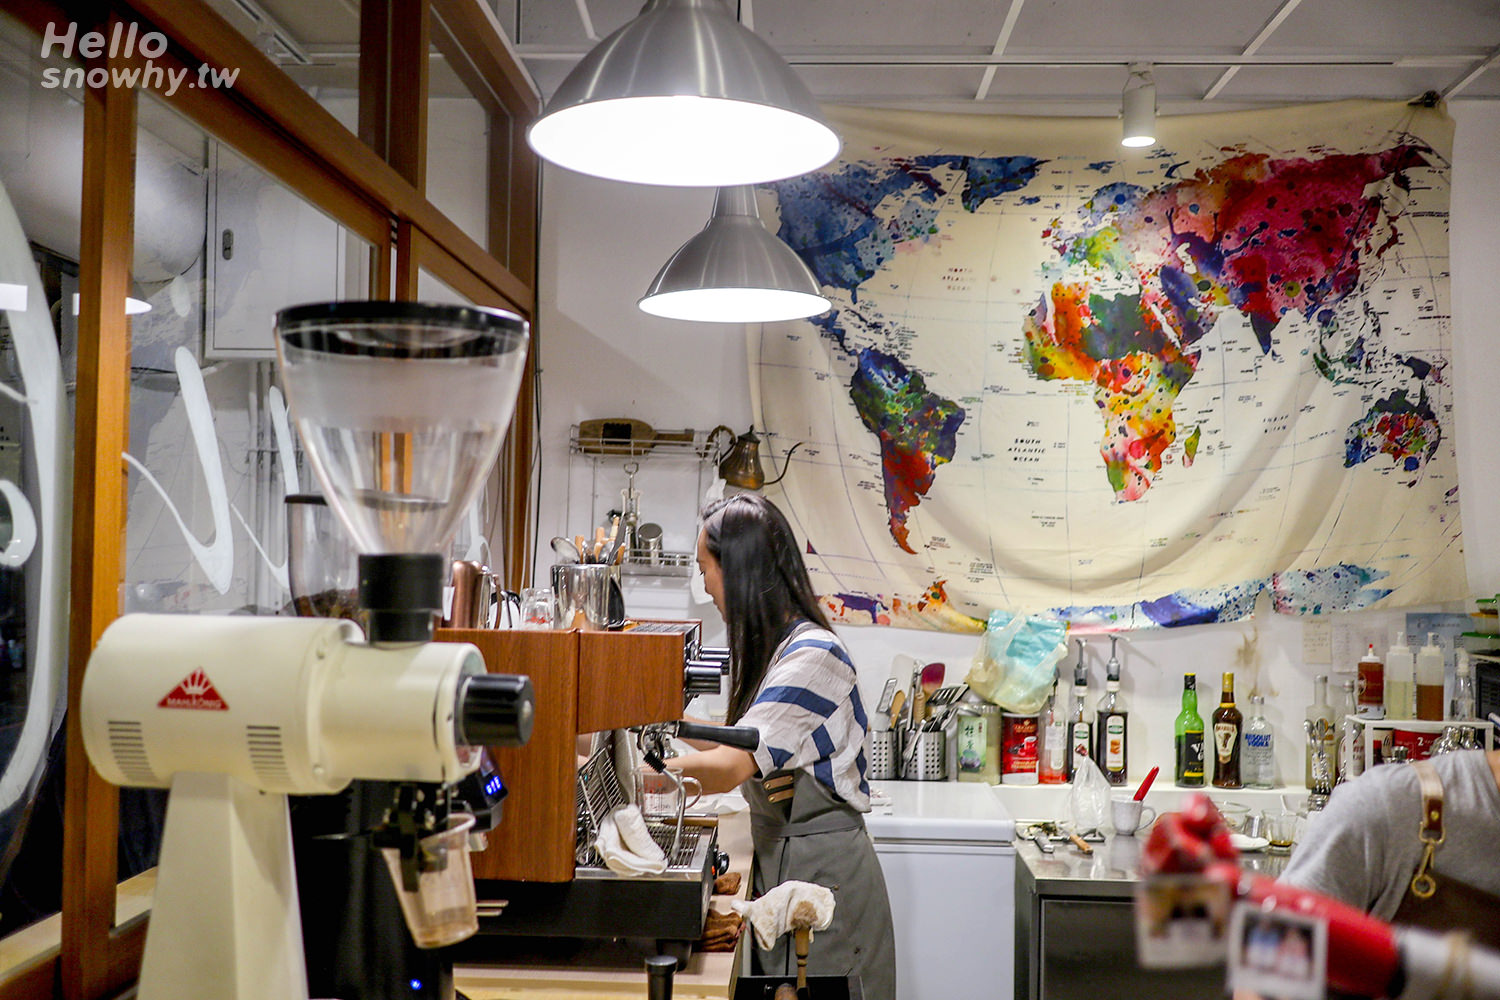 新北樹林,LAIFA Coffee Store,來發咖啡所,樹林咖啡廳,新北咖啡廳,IG文青咖啡廳,限定手作甜點